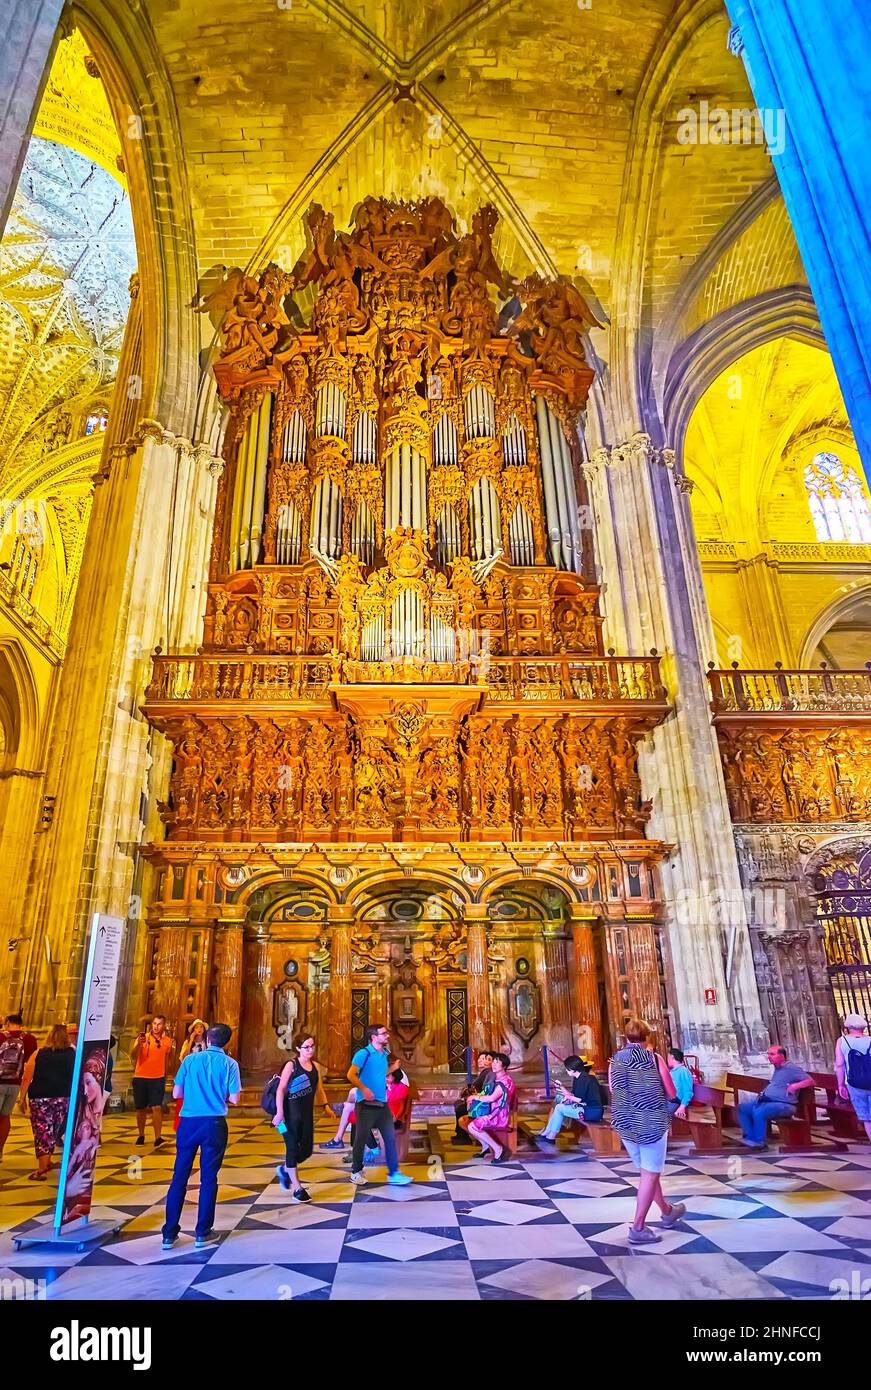 SEVILLA, SPANIEN - 29. SEPTEMBER 2019: Die geschnitzte Holzorgel der Kathedrale von Sevilla mit Steinbögen und Säulen, am 29. September in Sevilla Stockfoto